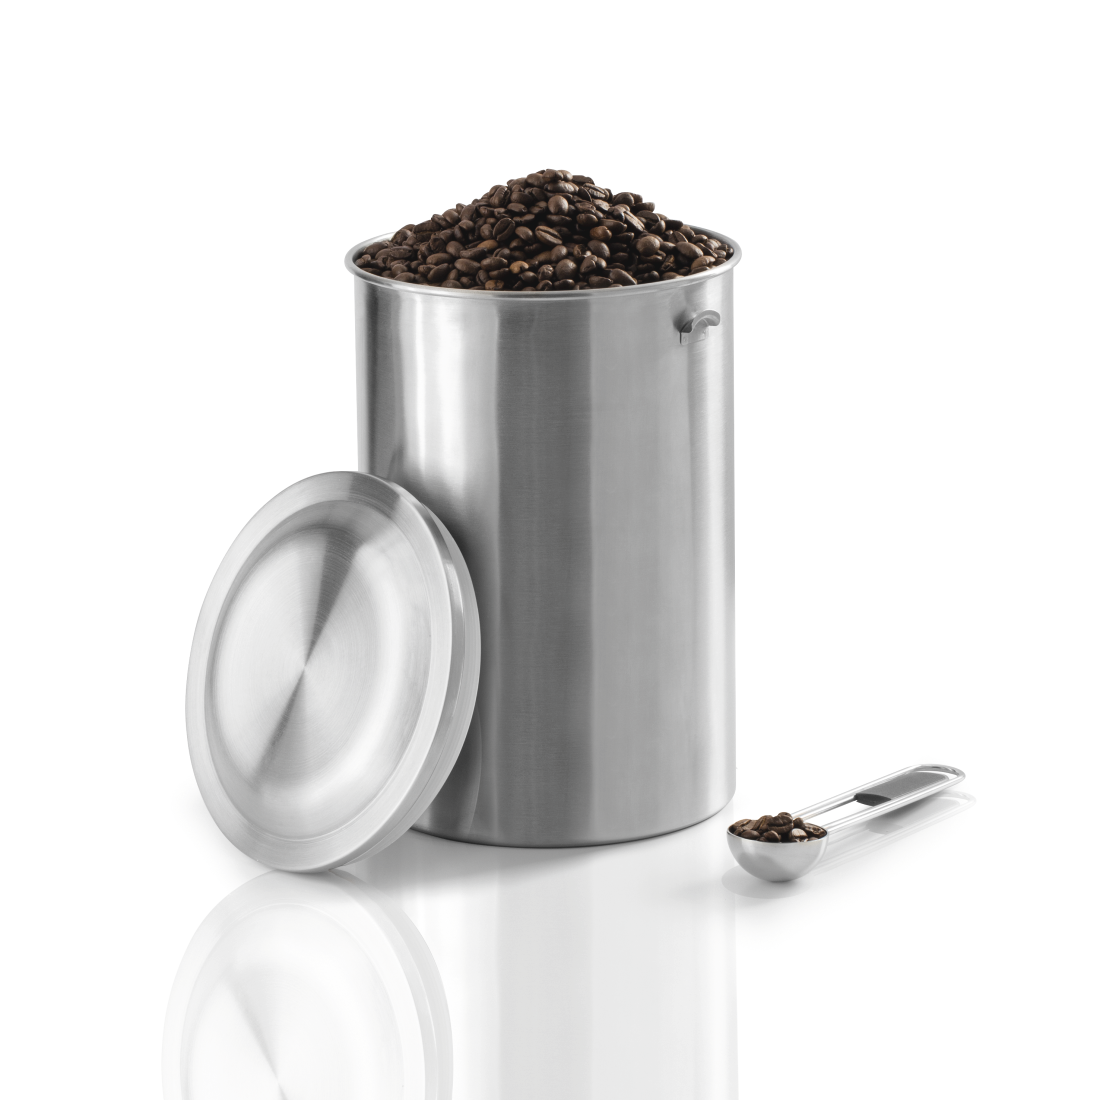 abx3 Druckfähige Abbildung 3 - Xavax, Edelstahldose für 1 kg Kaffeebohnen, mit Löffel, Silber